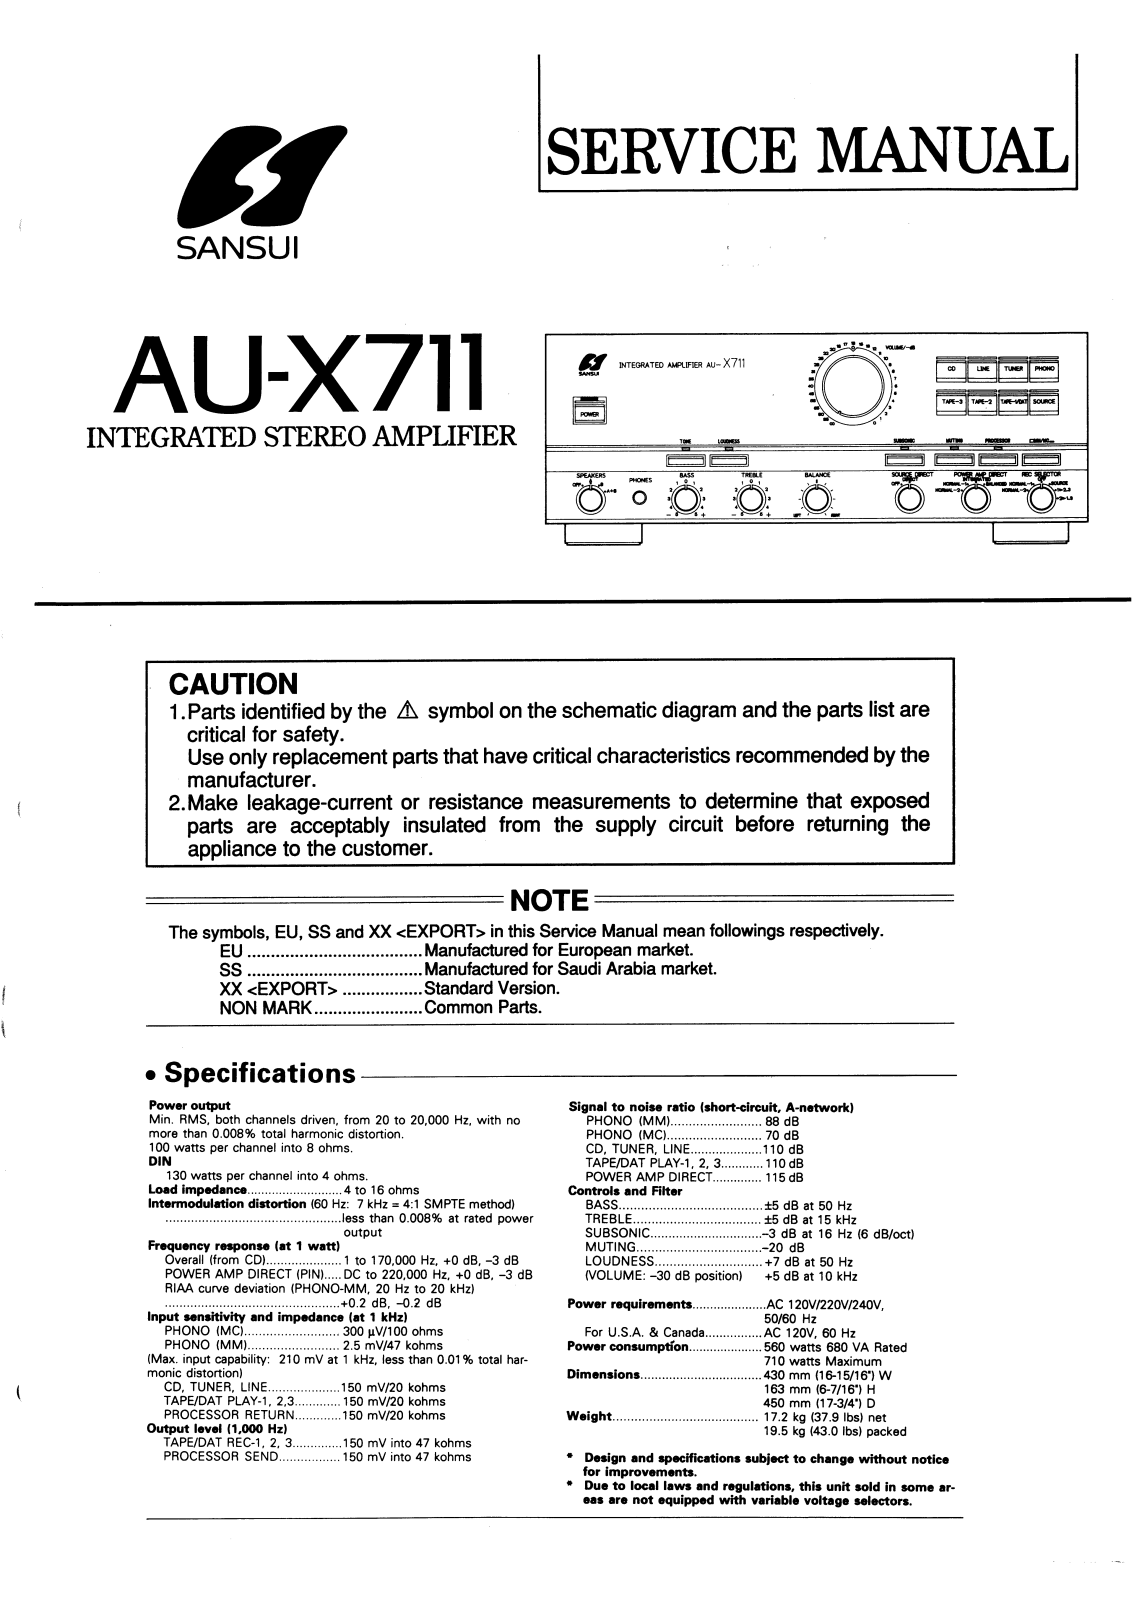 Sansui AUX-711 Service manual